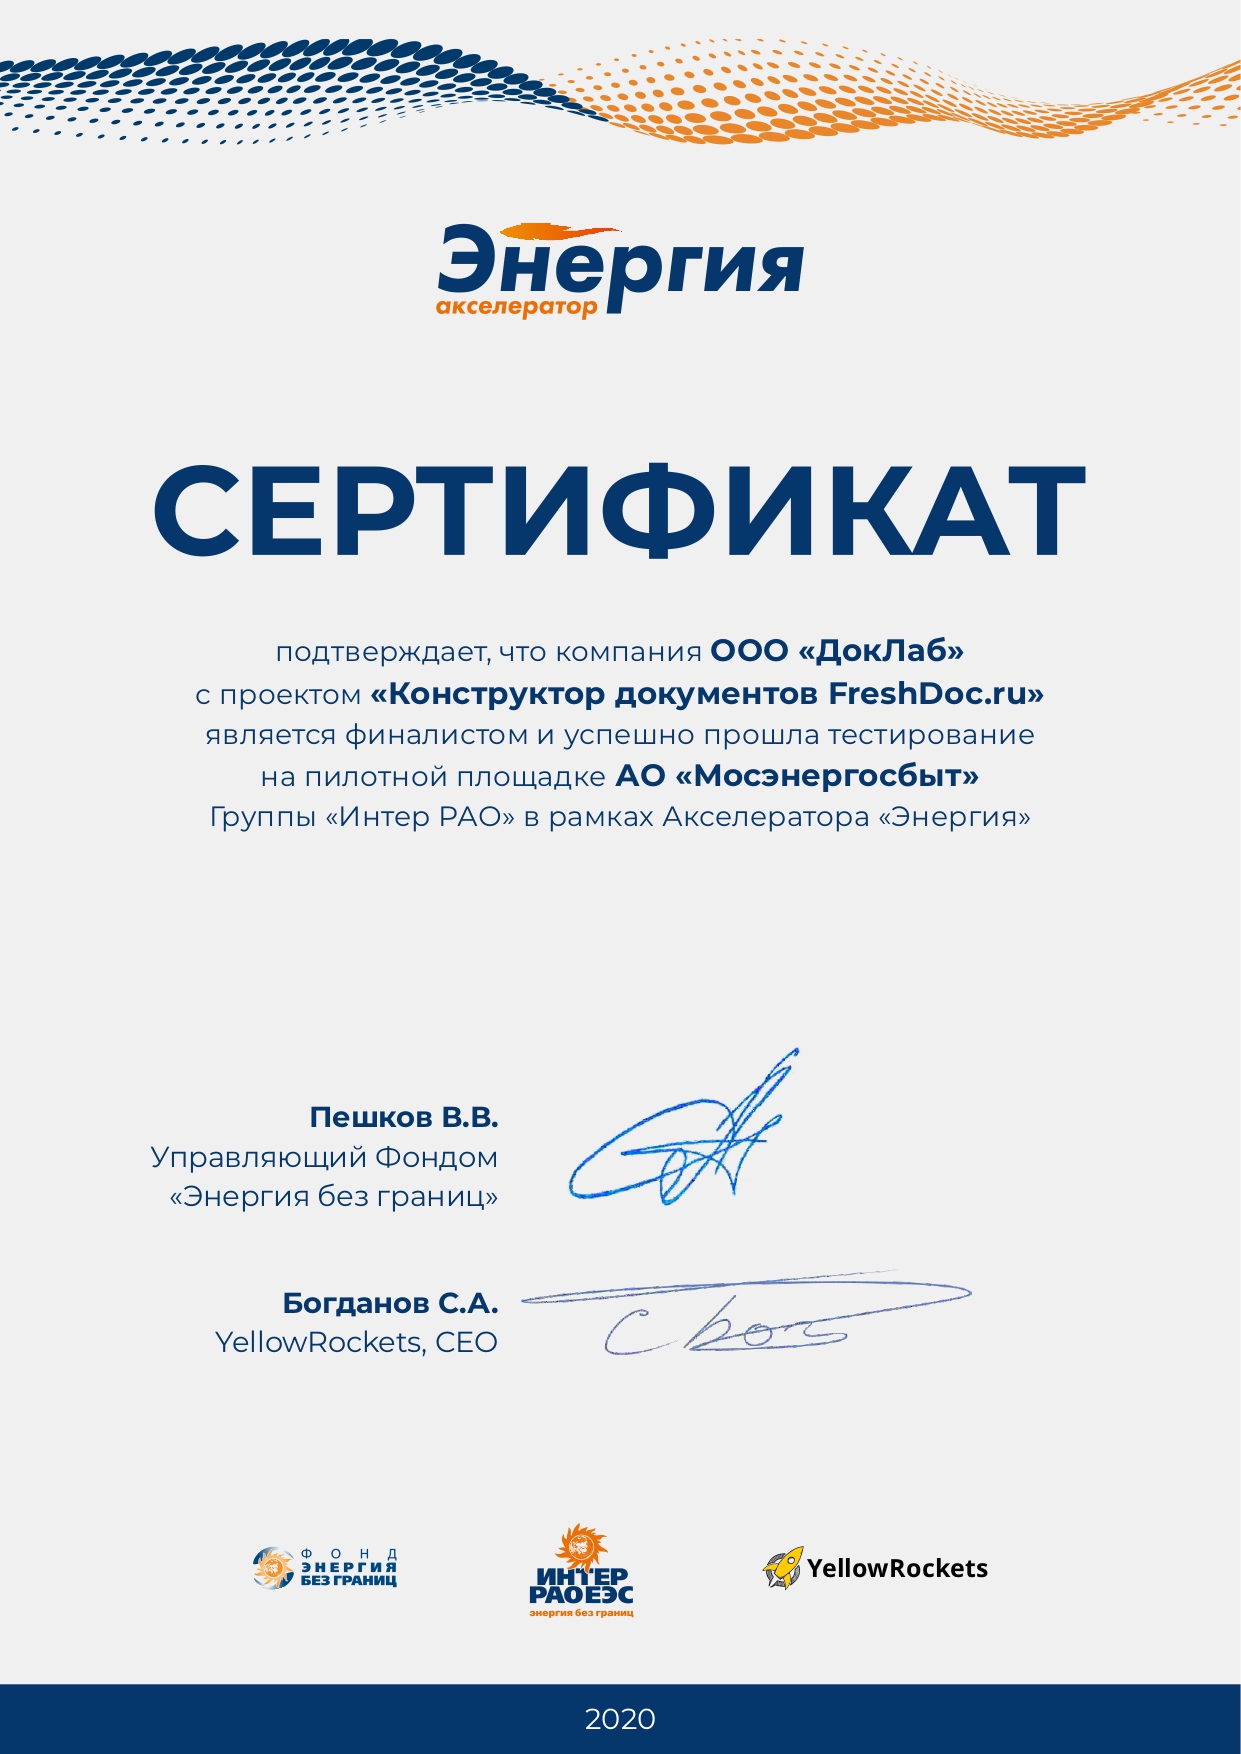 Сертификат участника «Акселератор энергия» МЭС